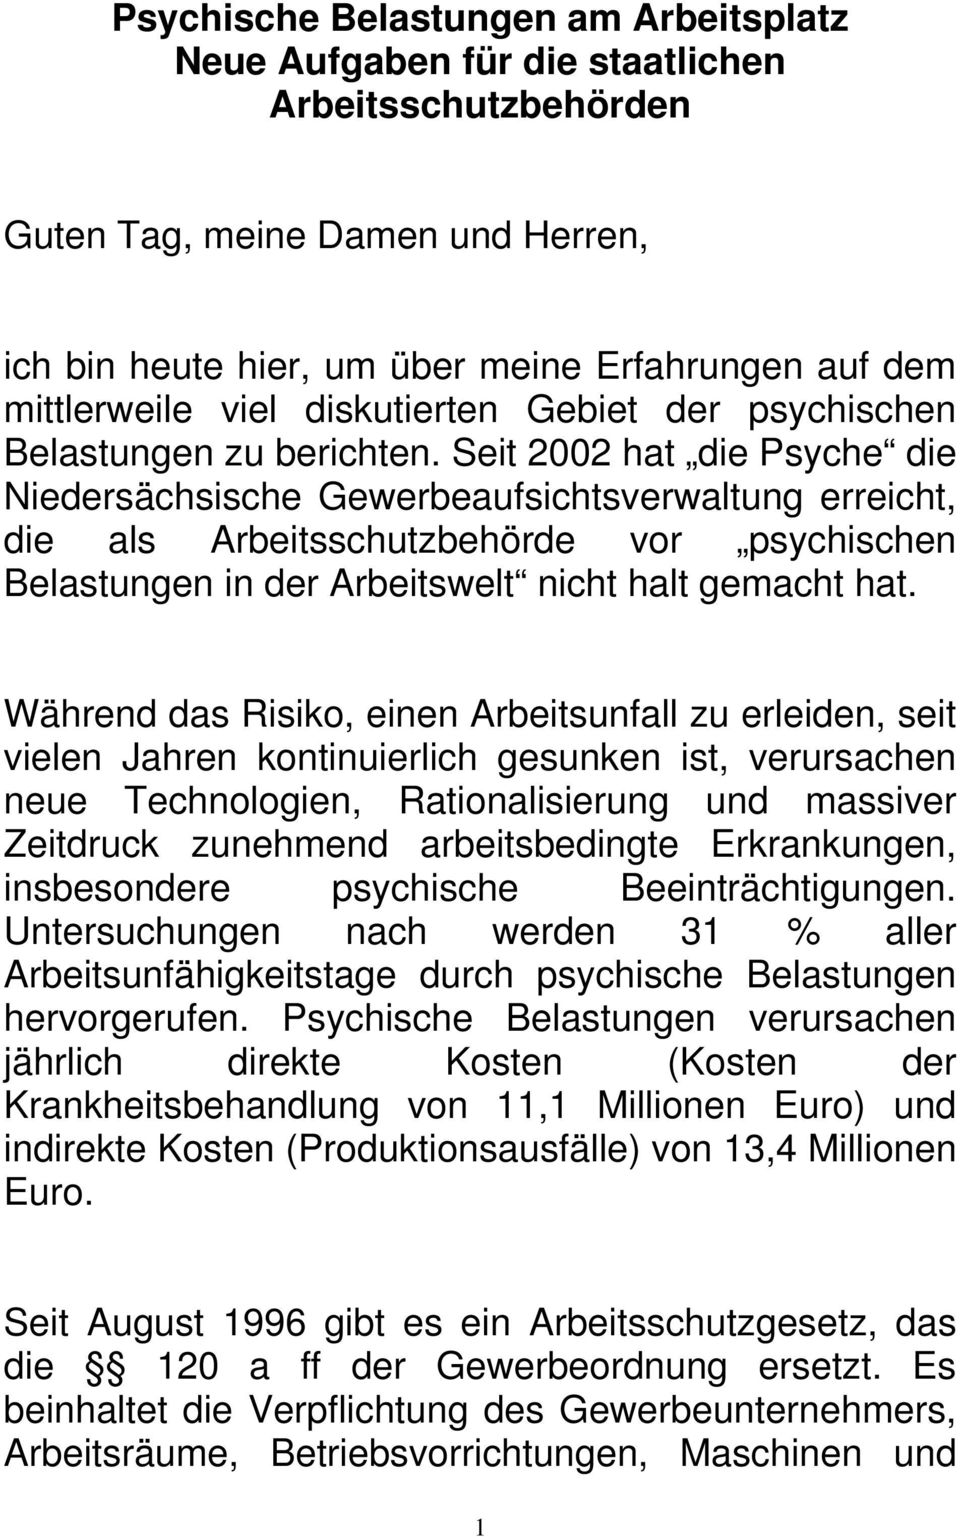 Seit 2002 hat die Psyche die Niedersächsische Gewerbeaufsichtsverwaltung erreicht, die als Arbeitsschutzbehörde vor psychischen Belastungen in der Arbeitswelt nicht halt gemacht hat.